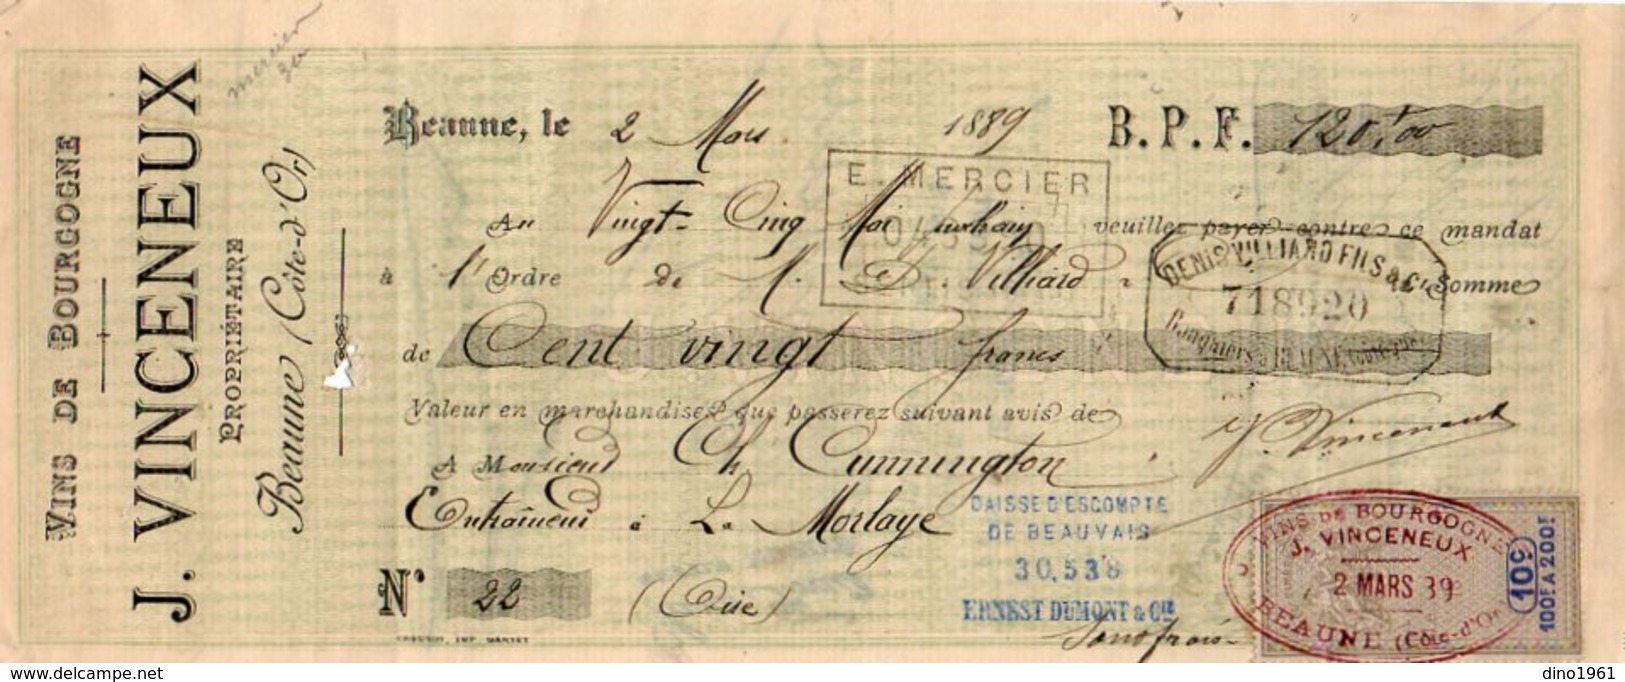 VP10.114 -  Lettre De Change - Vins Fins & Ordinaires De Bourgogne J. VINCENEUX à BEAUNE - Bills Of Exchange